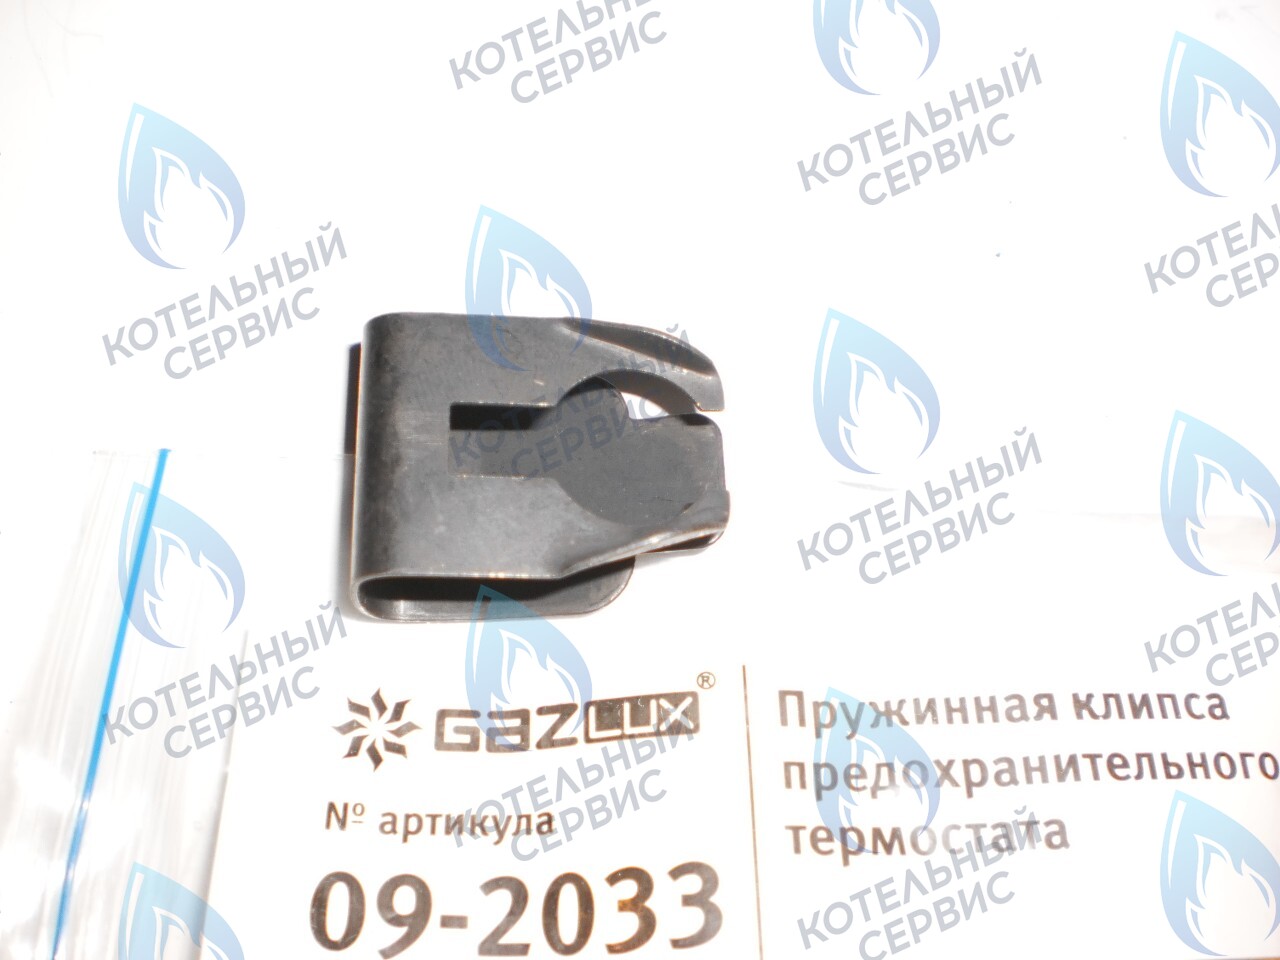 09-2033 Пружинная клипса предохранительного термостата (09-2033) GAZLUX в Казани